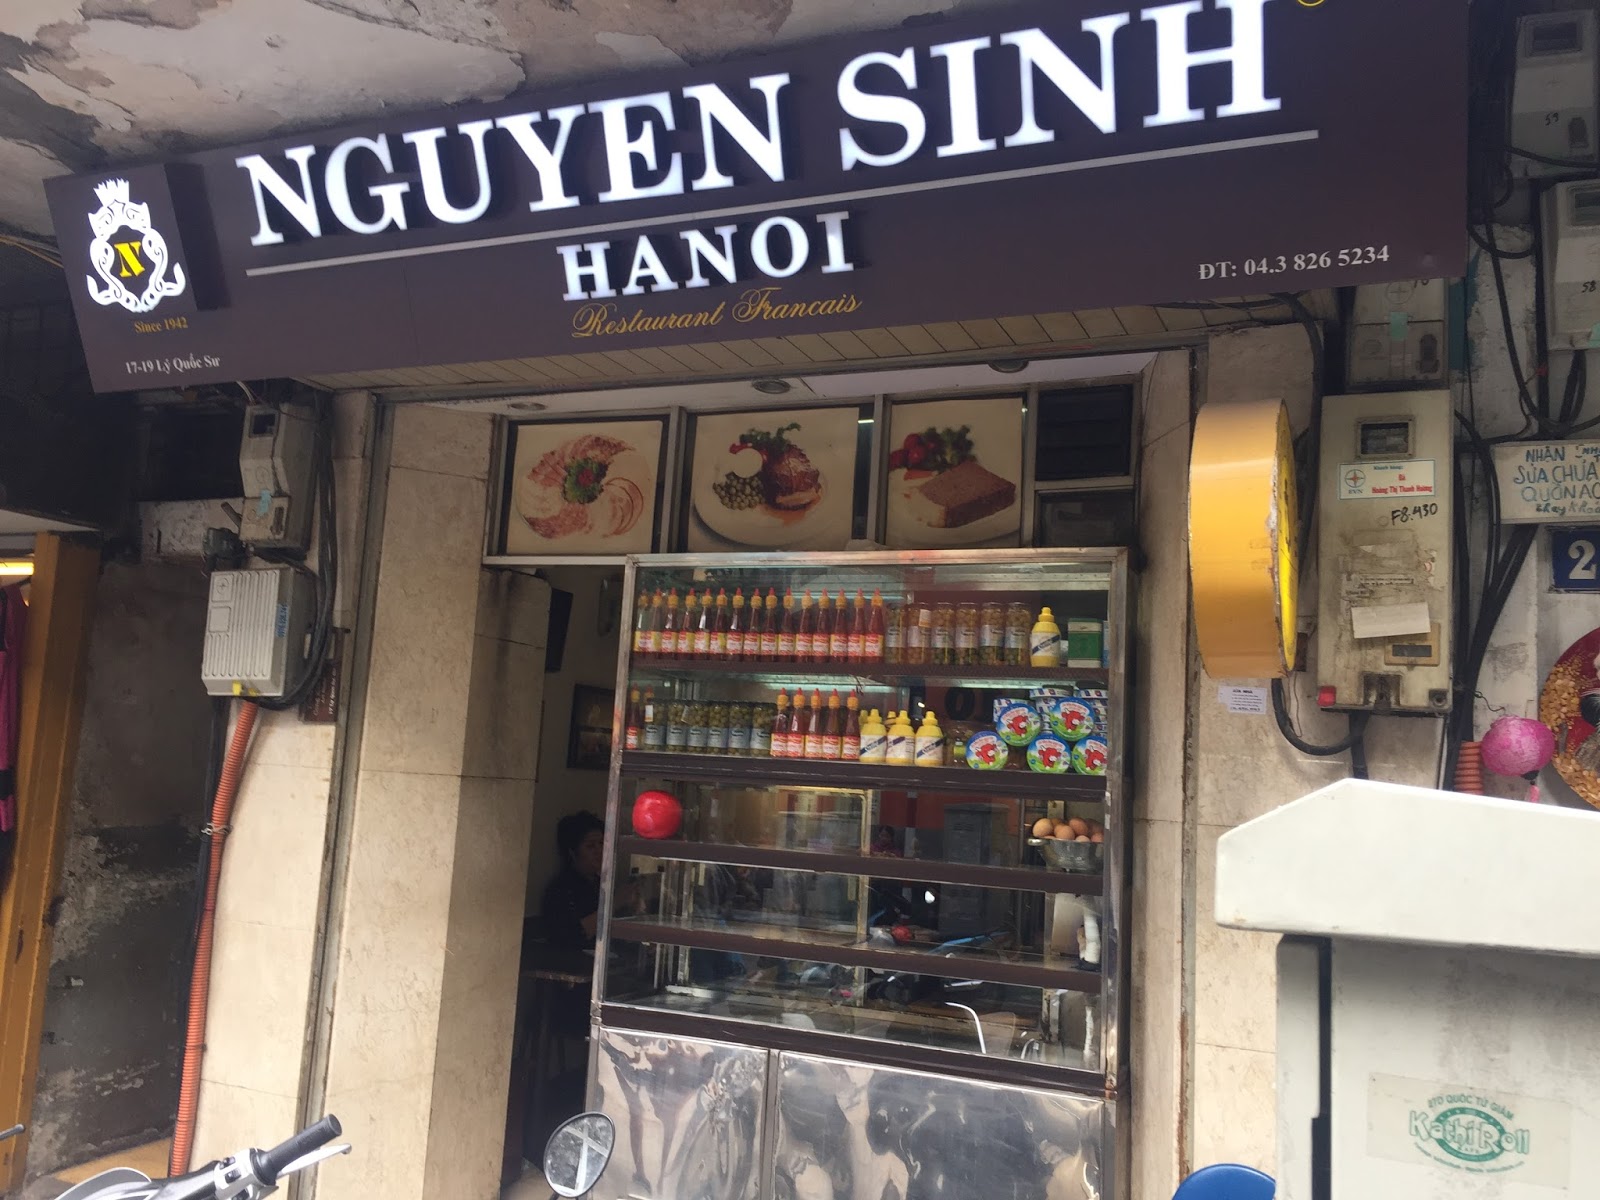 Where to eat Banh Mi in Hanoi